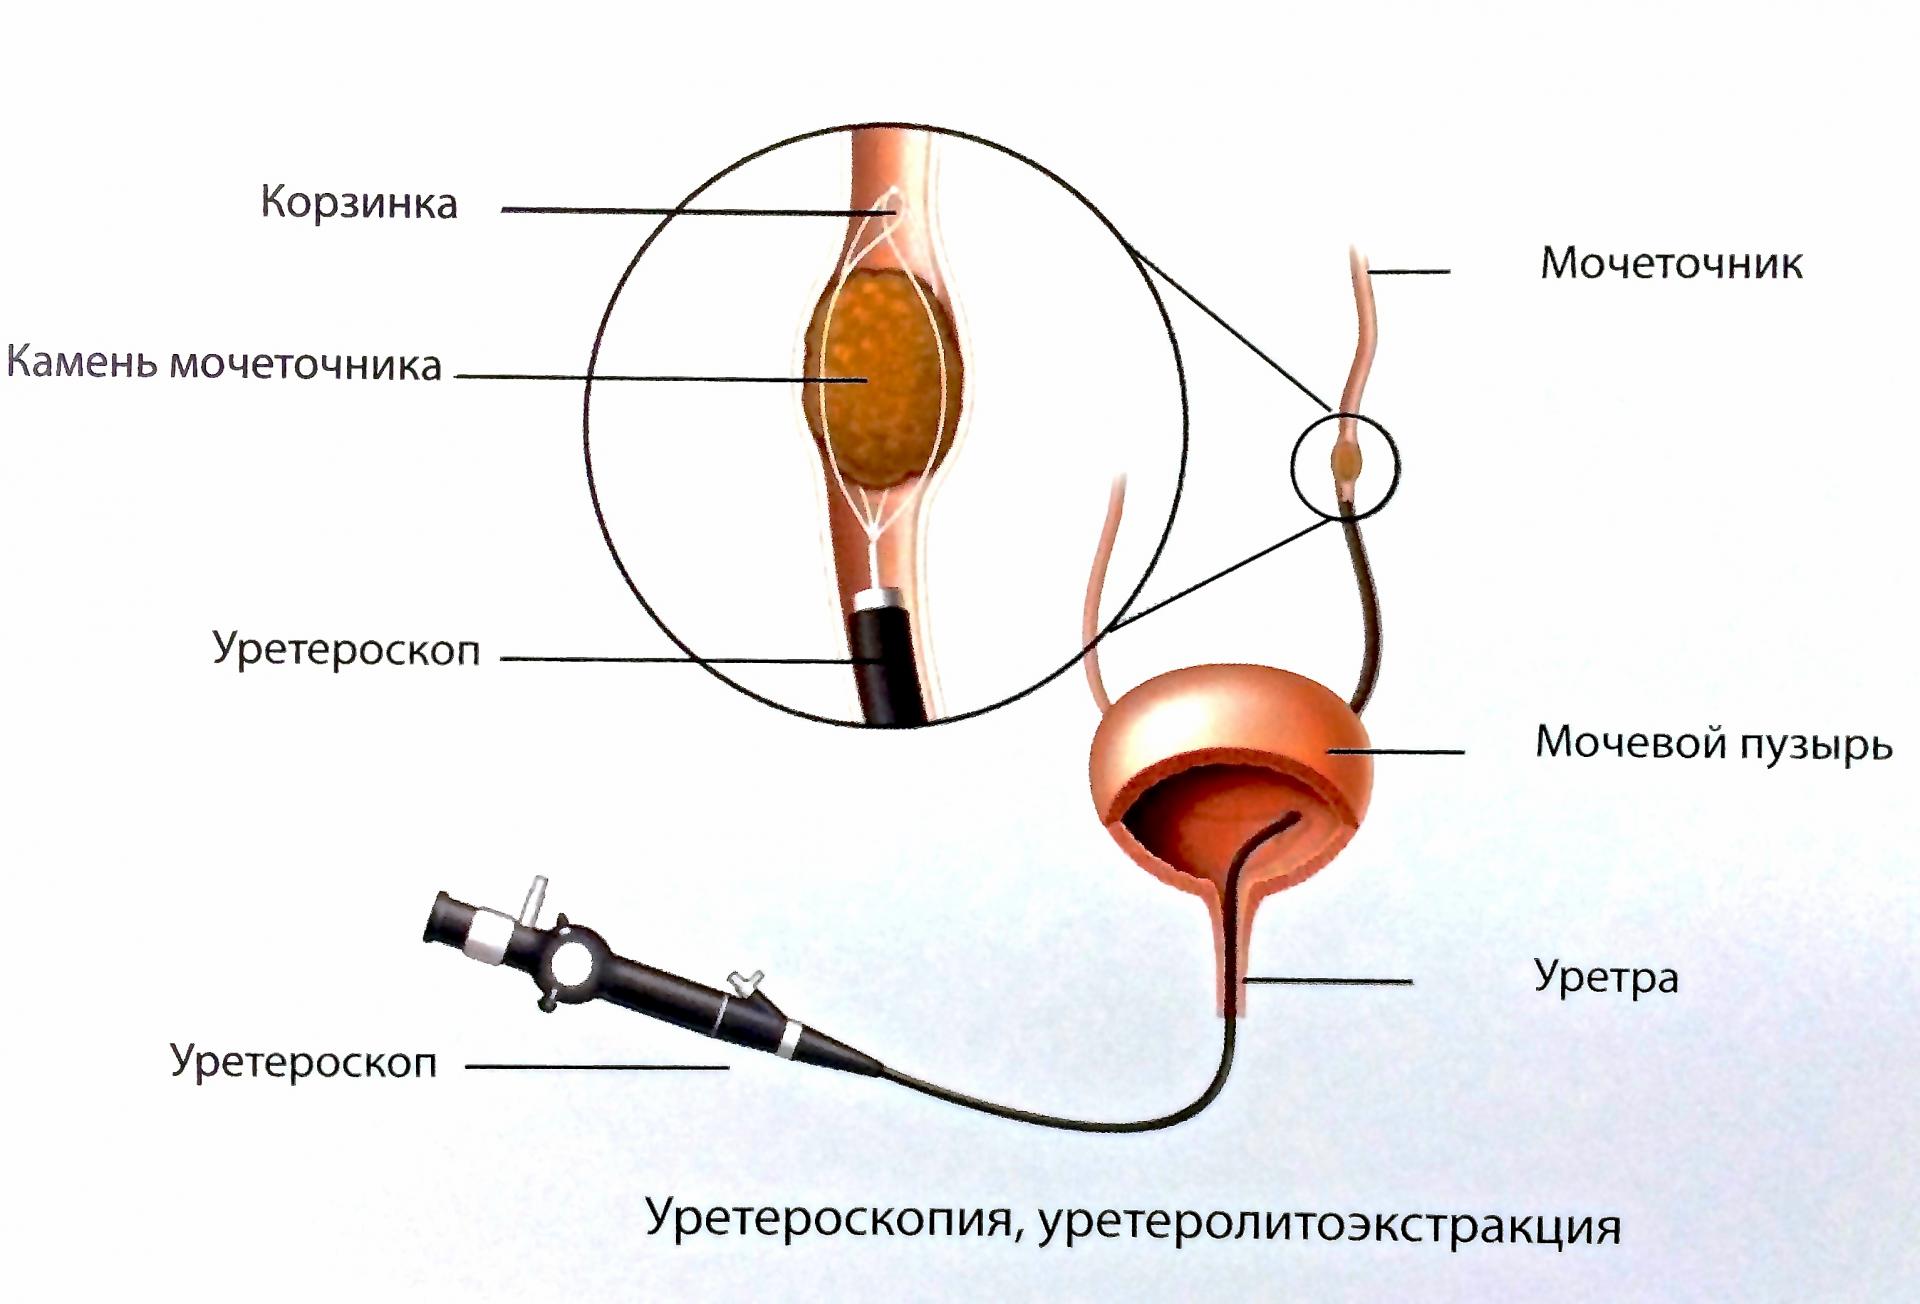 Операция на мочевом пузыре у мужчин. Урология стент в мочеточнике. Уретроскопия мочевого пузыря. Эндоскопическая литотрипсия. Эндоскопическая уретеролитотрипсия.